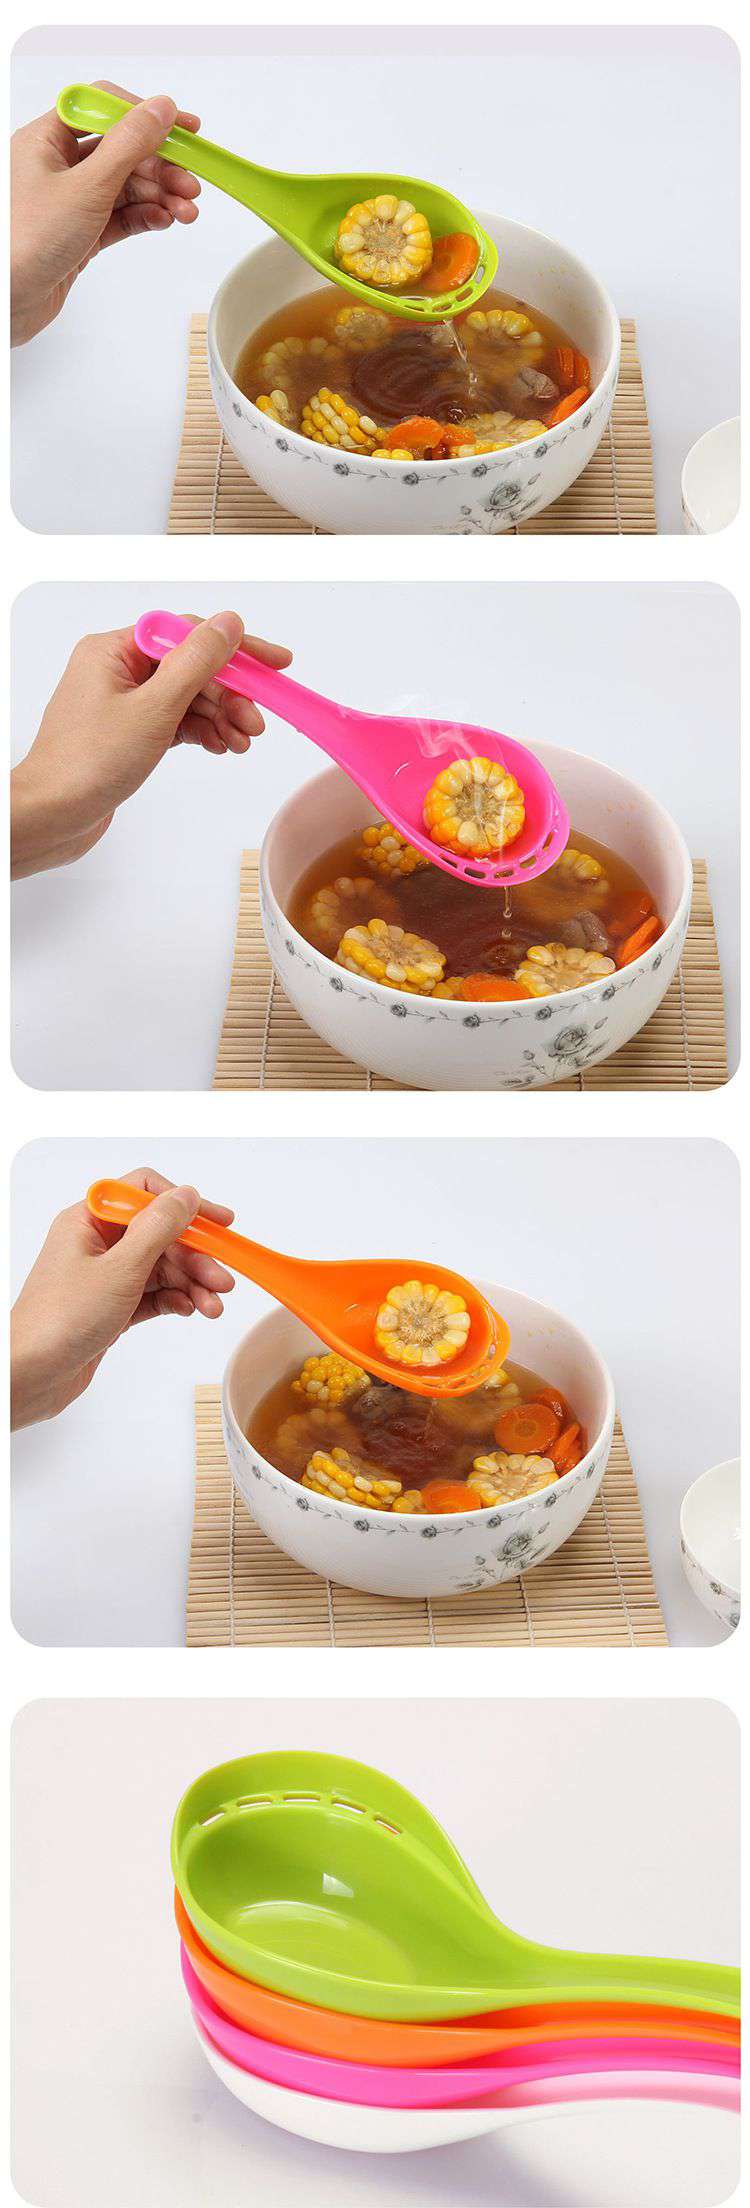 兩用便利創意湯匙 火鍋特別設計漏湯湯匙4